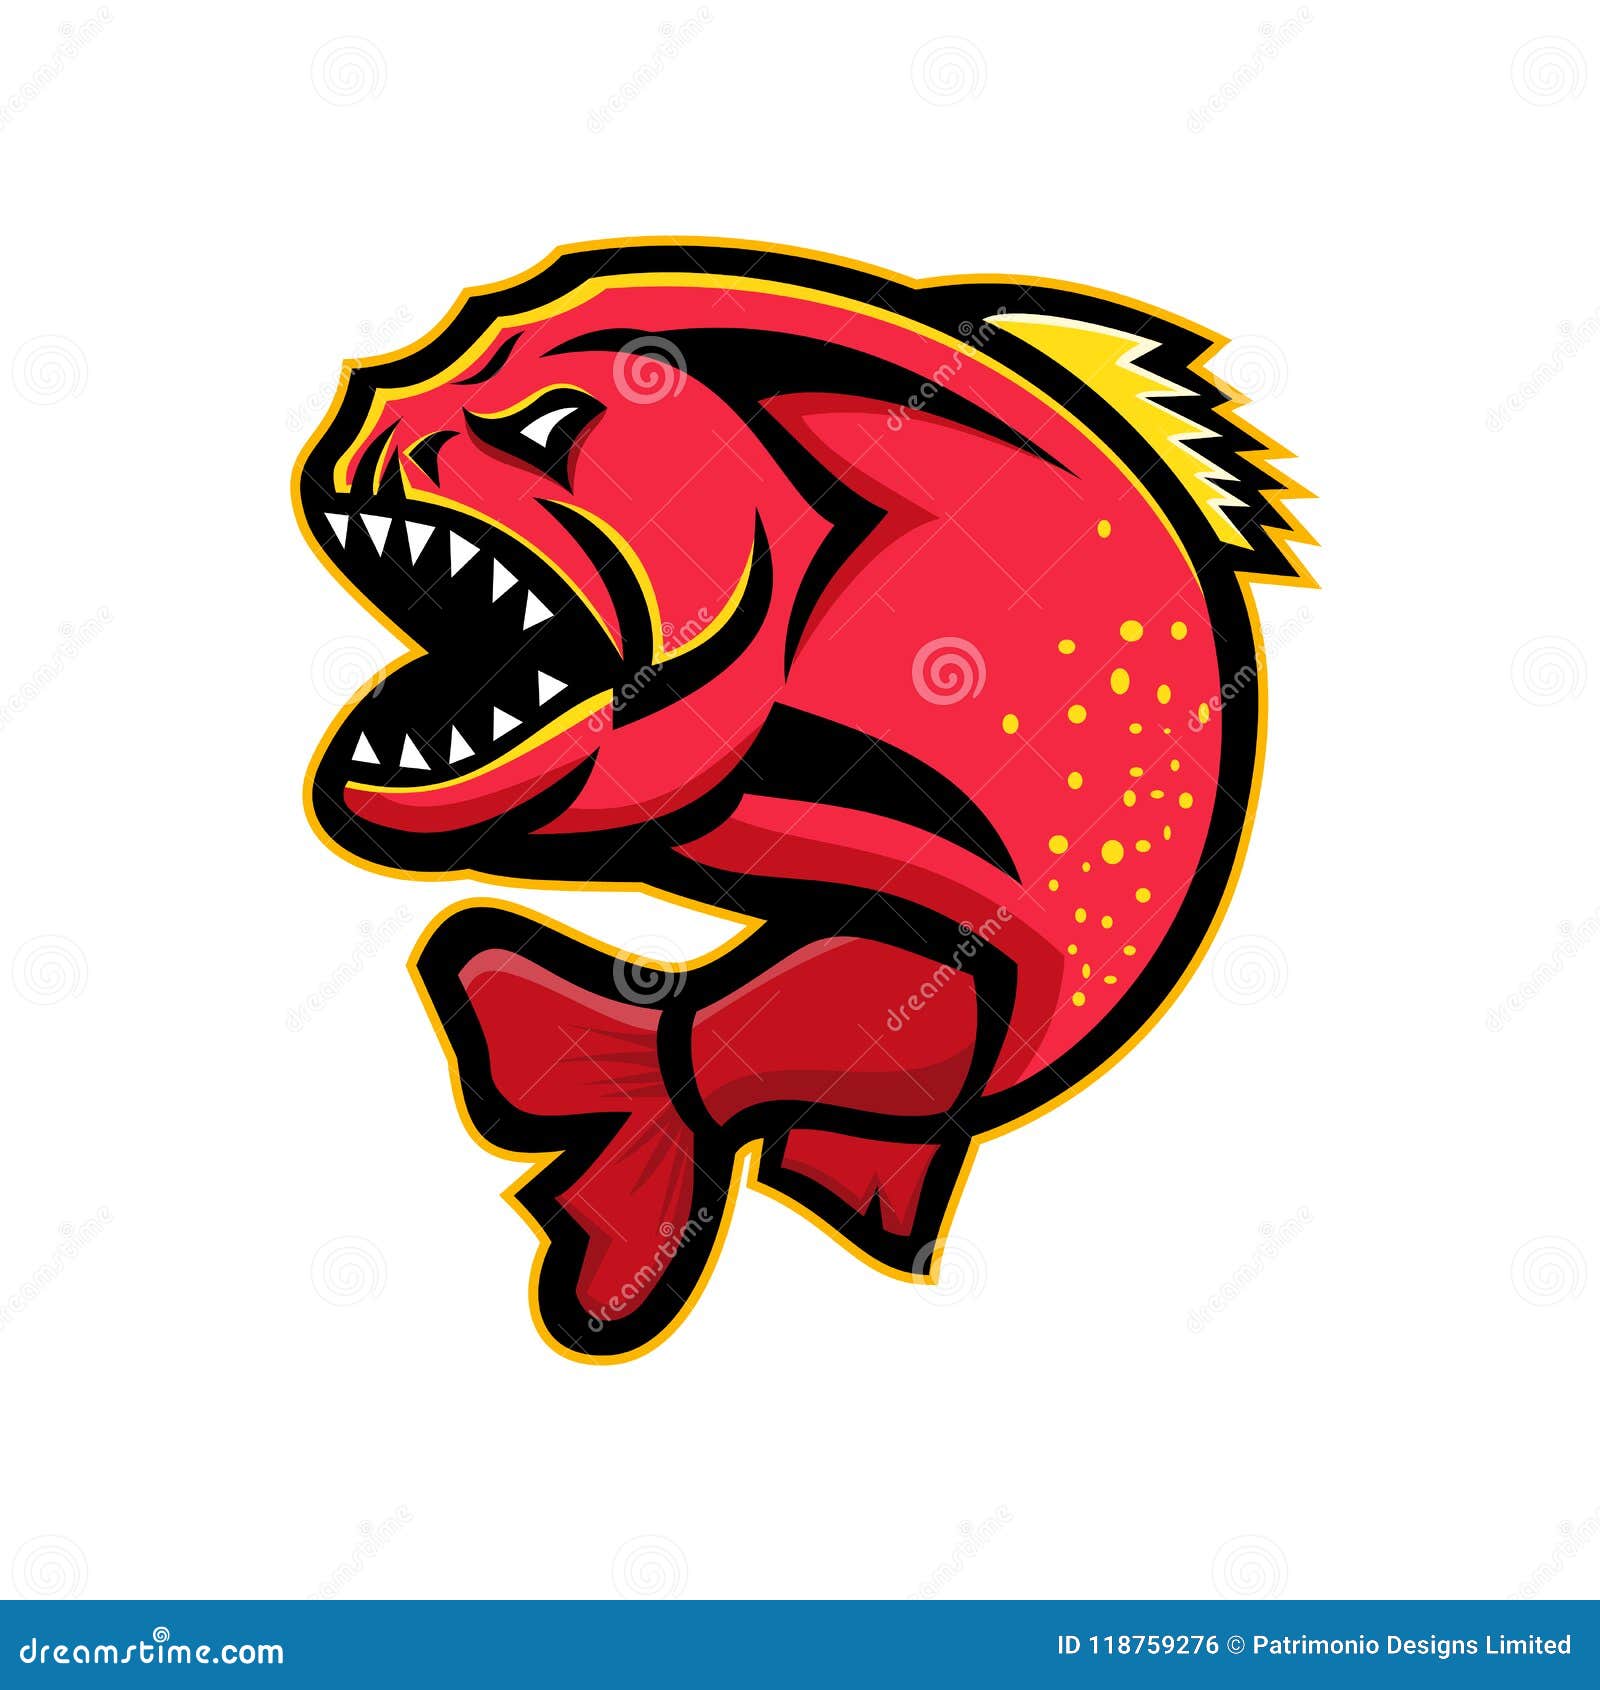 piranha sports mascot